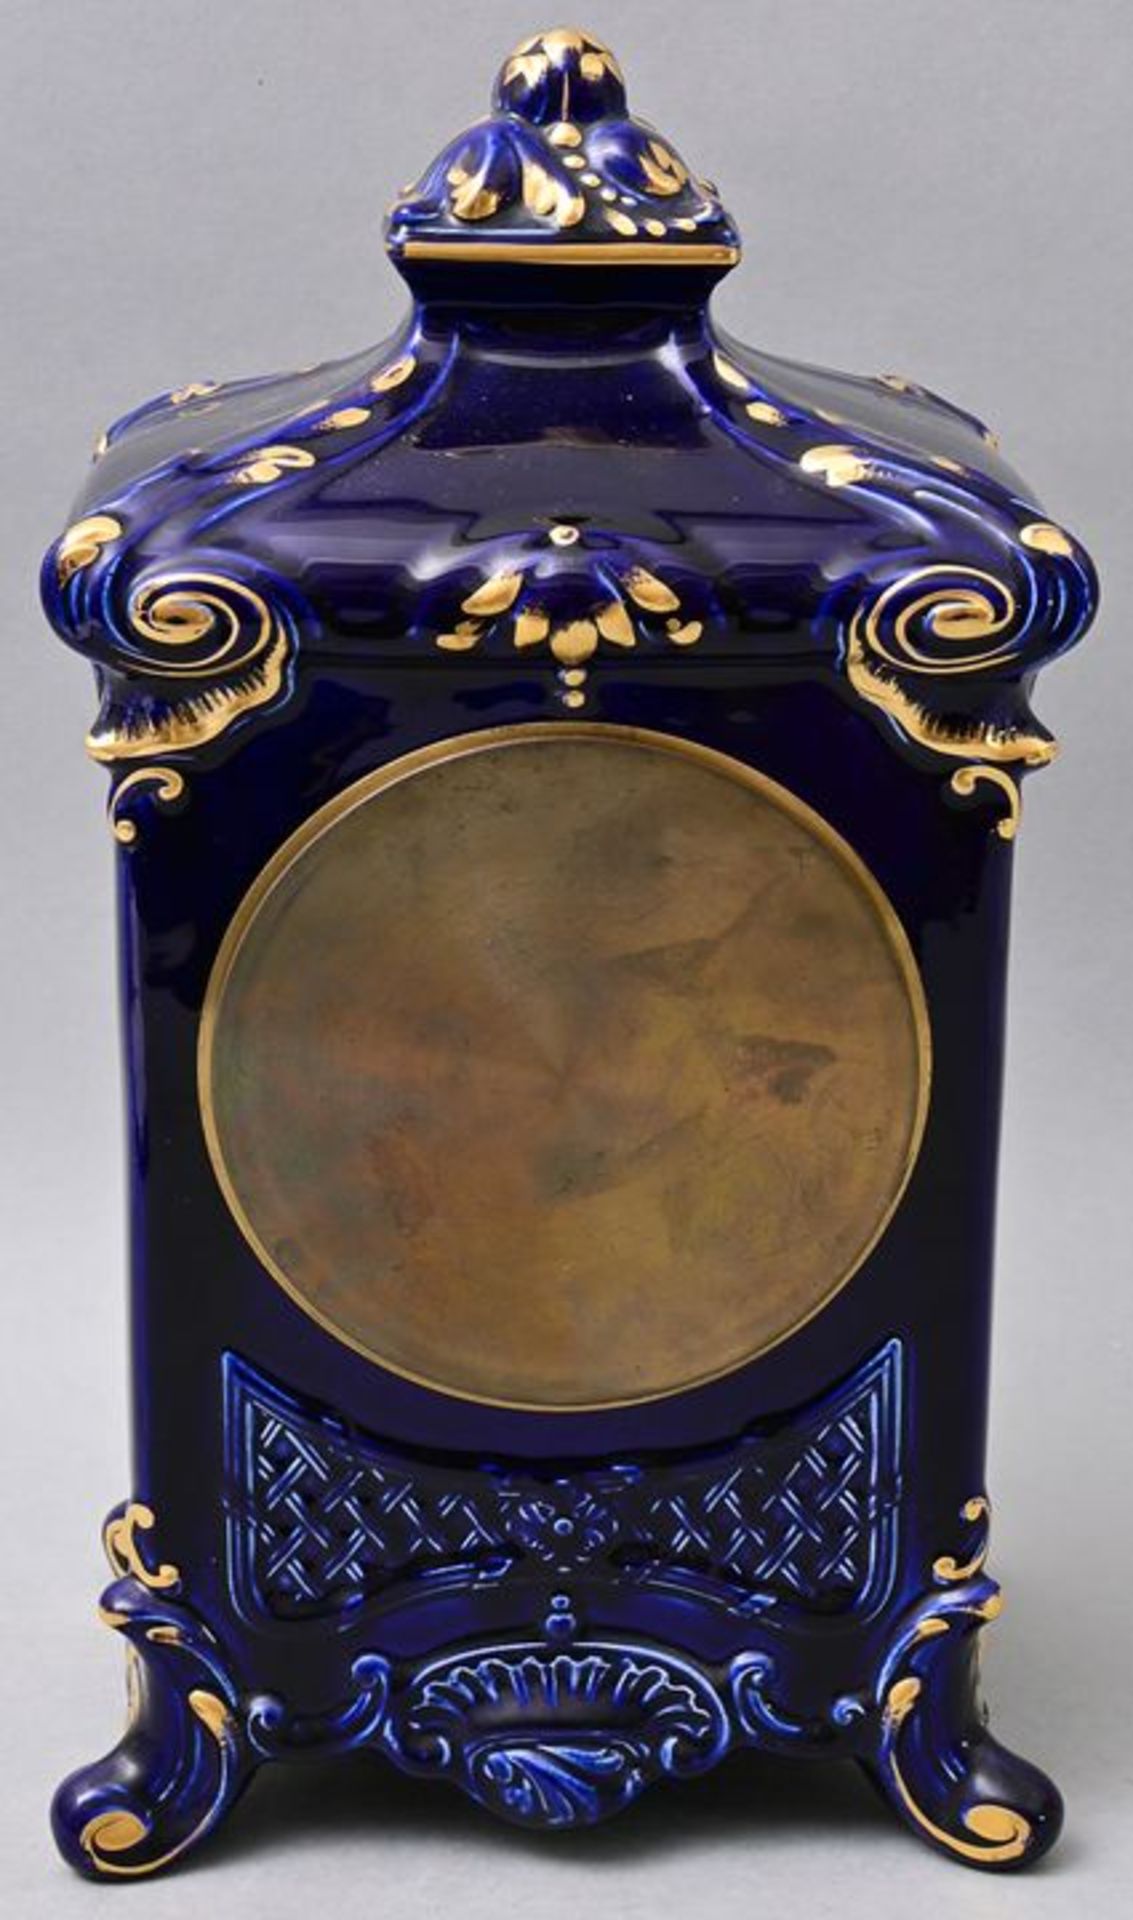 Keramik-Uhr/ mantel clock - Bild 4 aus 5